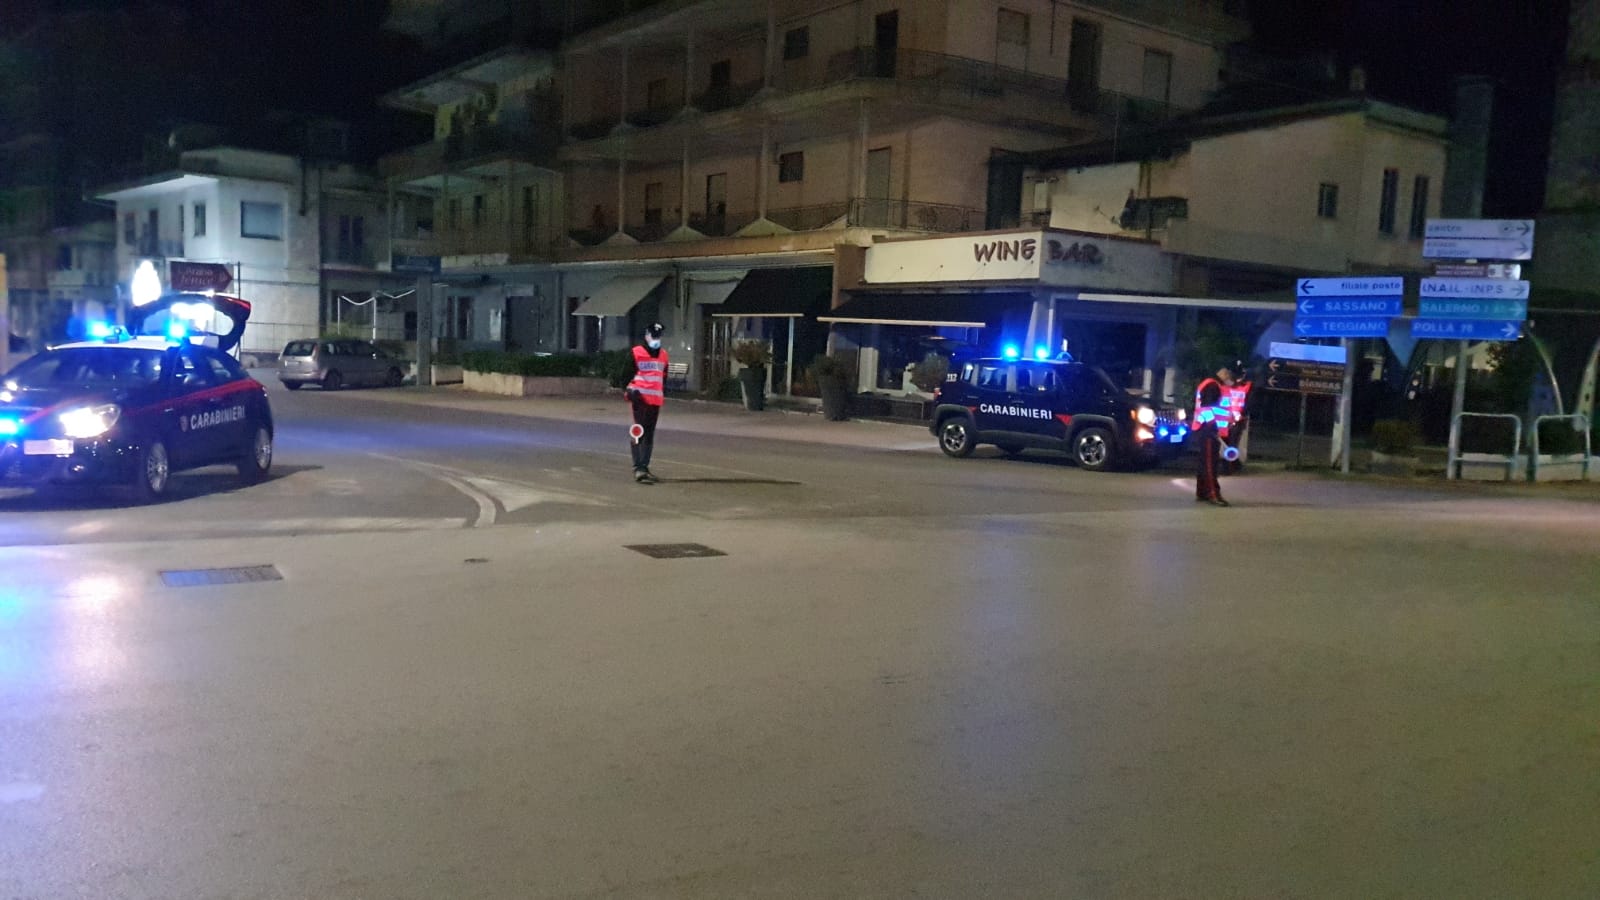 Prima notte di coprifuoco nel Vallo di Diano, carabinieri nelle strade deserte